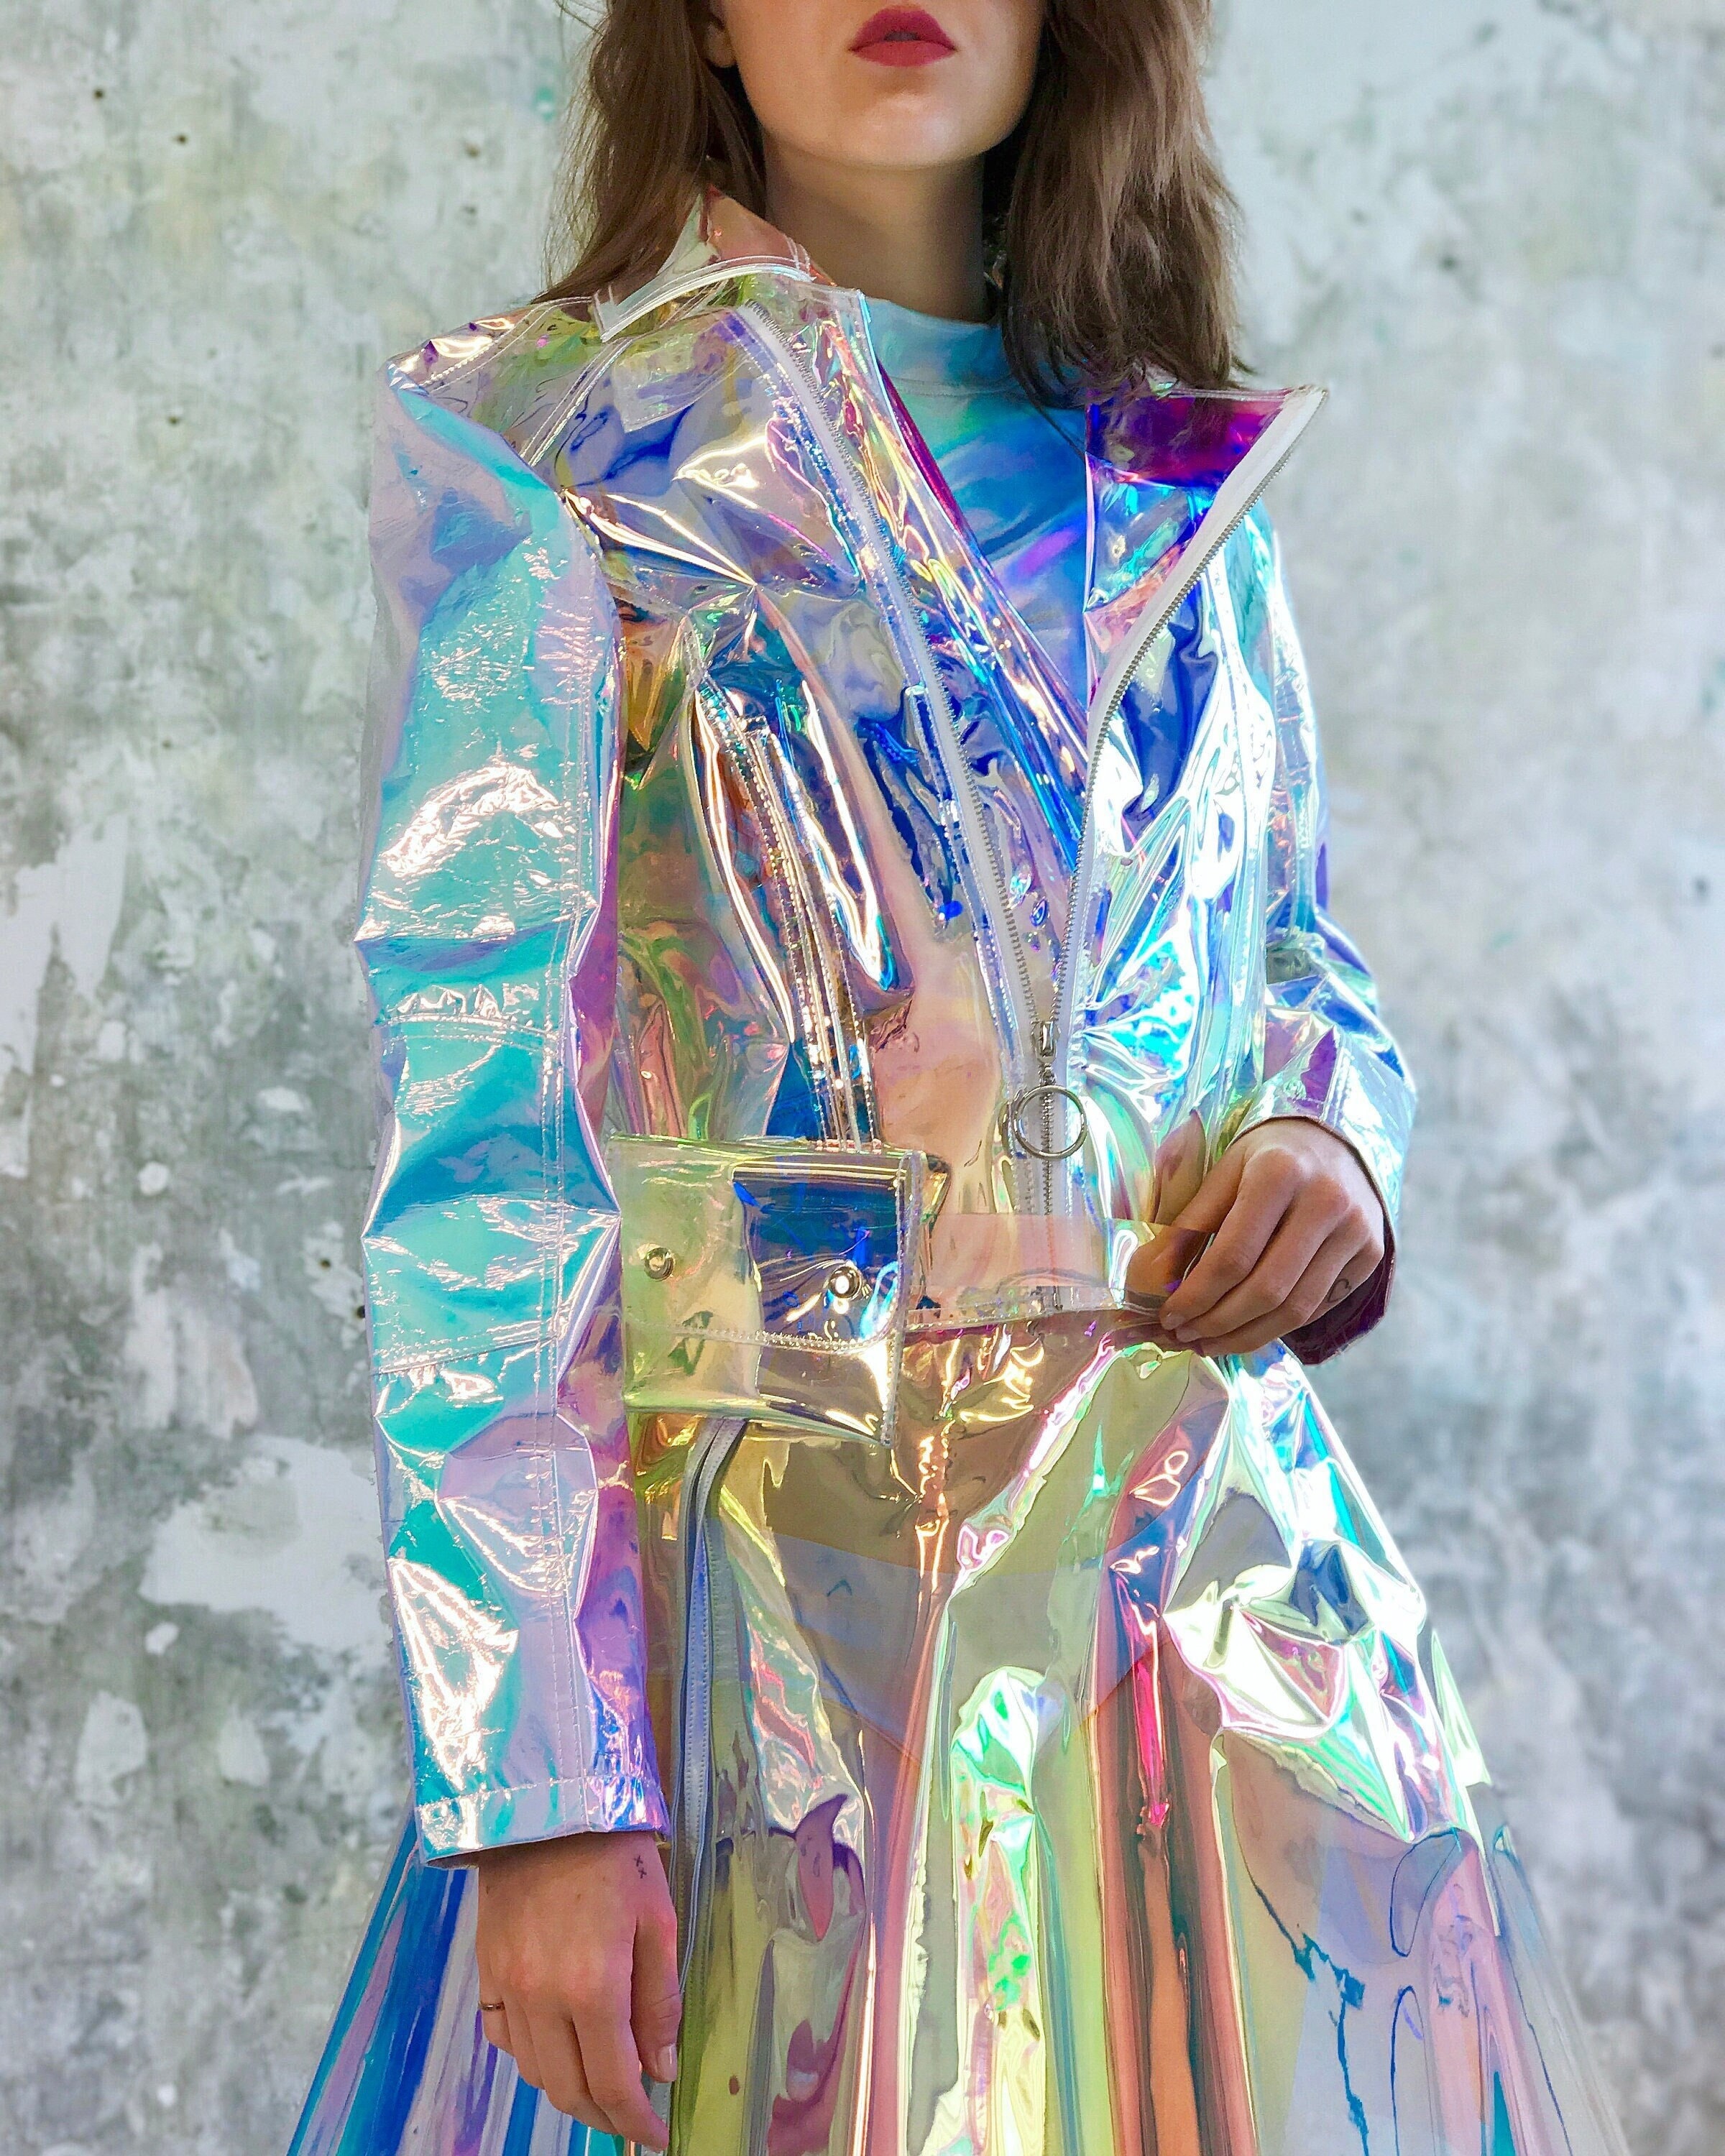 Reflectantes, iridiscentes y futuristas: así son las chaquetas de